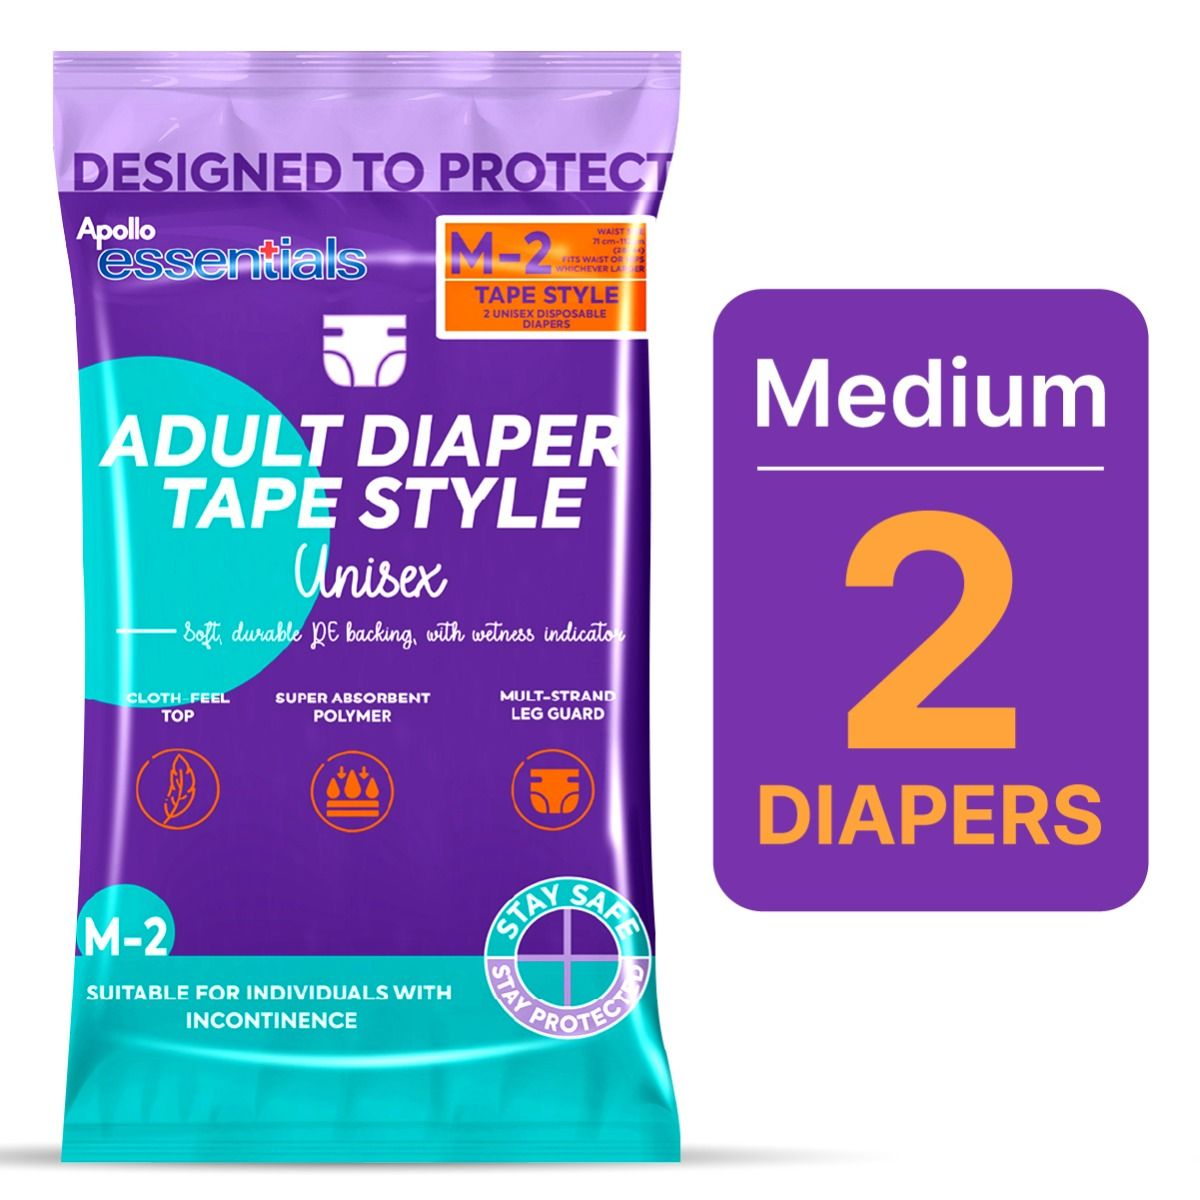 Buy Apollo Essentials Adult Diaper Tape Style Unisex Medium, 2 Count Online